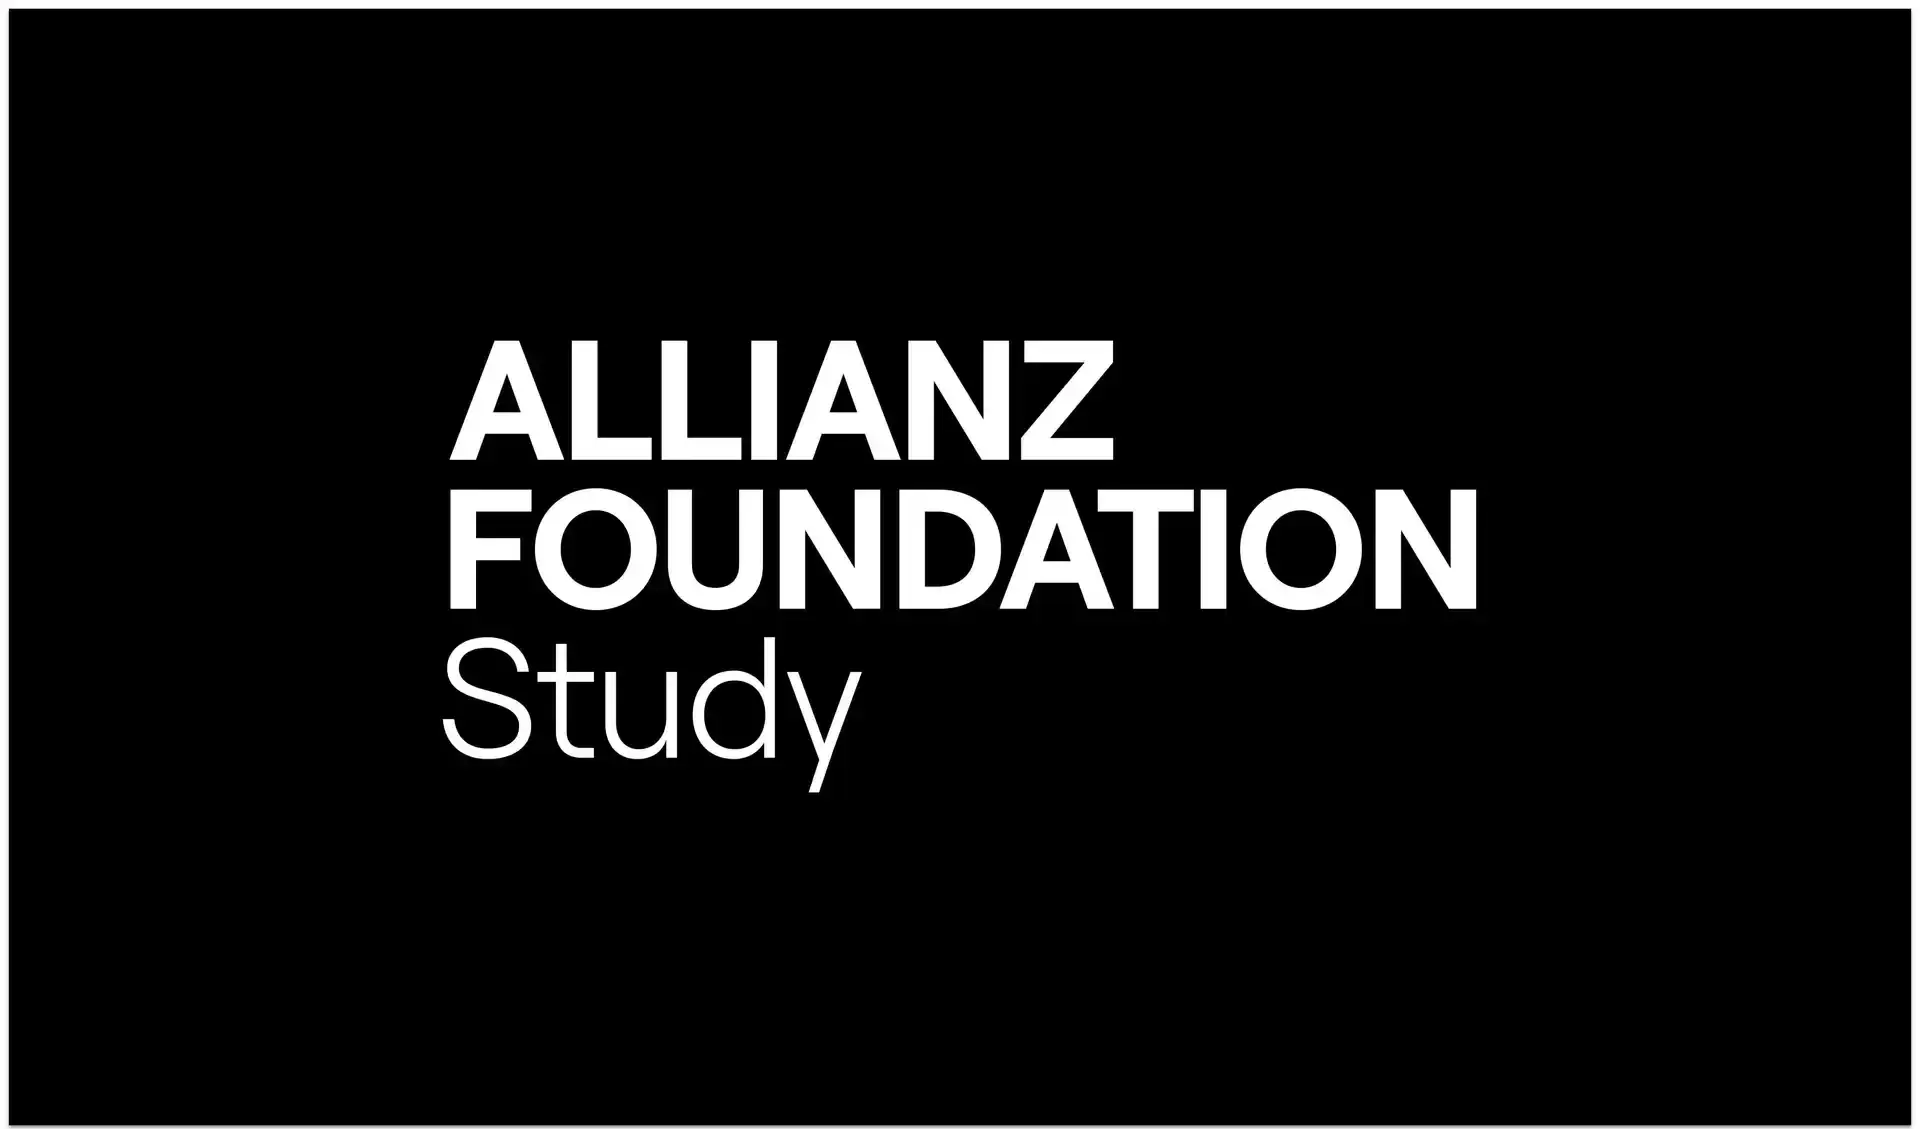 Die Wortmarke der Allianz Foundation Study